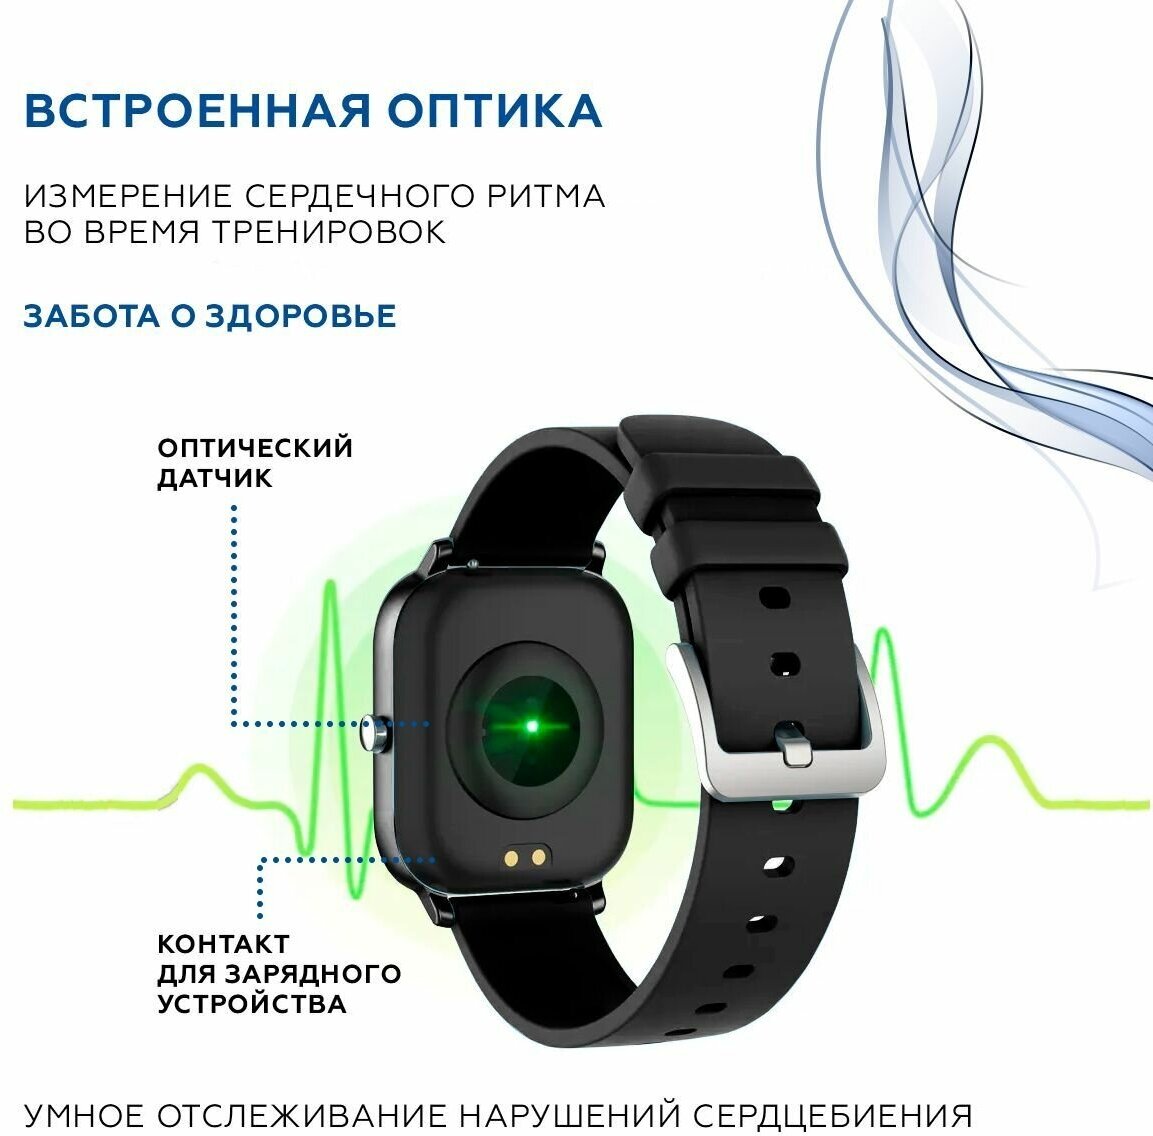 Смарт часы Smart Watch черные / Bluetooth / Смарт часы мужские женские детские / Фитнес часы наручные спортивные / Фитнес браслет /Черные